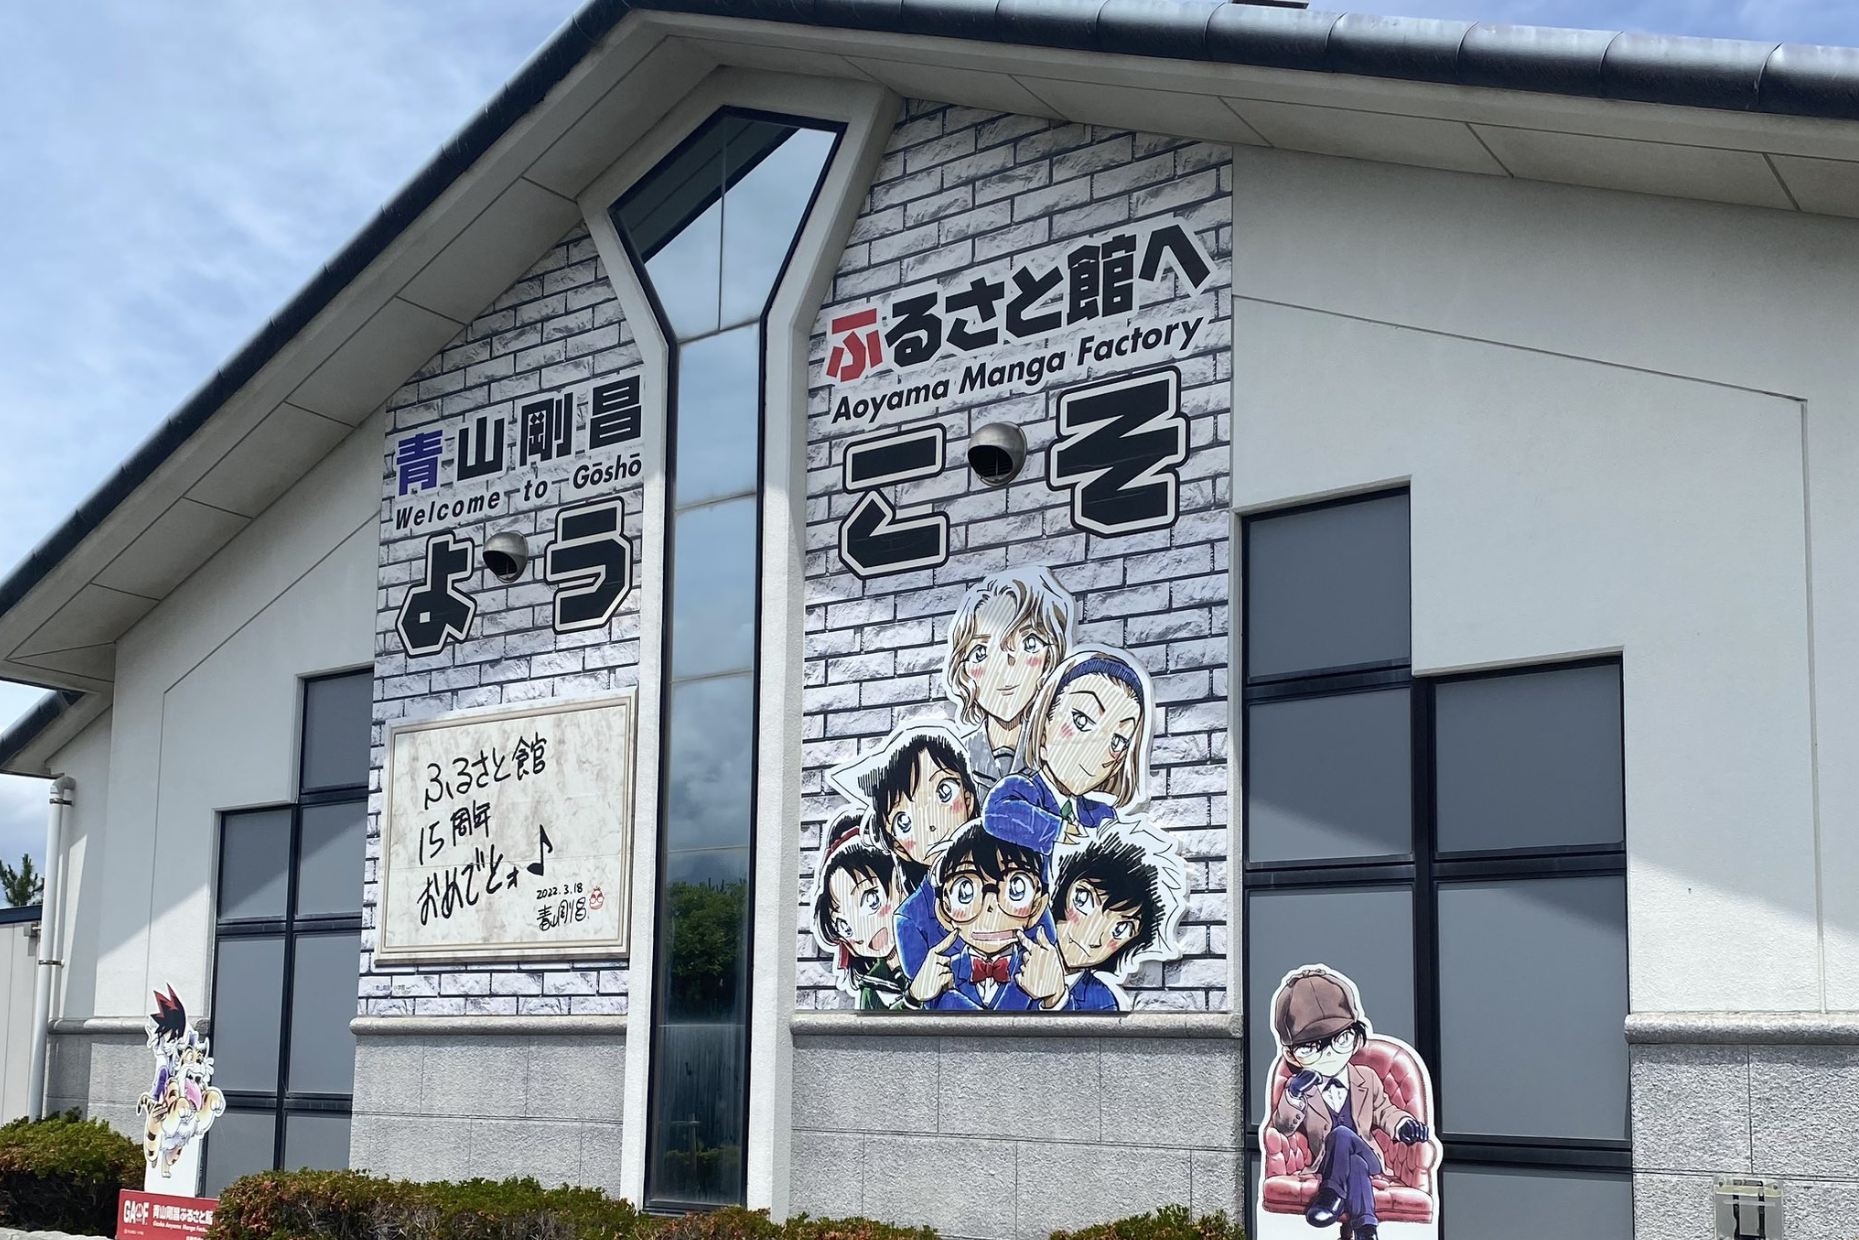 鳥取県出身である原作者・青山剛昌先生の資料やコナンに関連する展示物があるアニメミュージアム